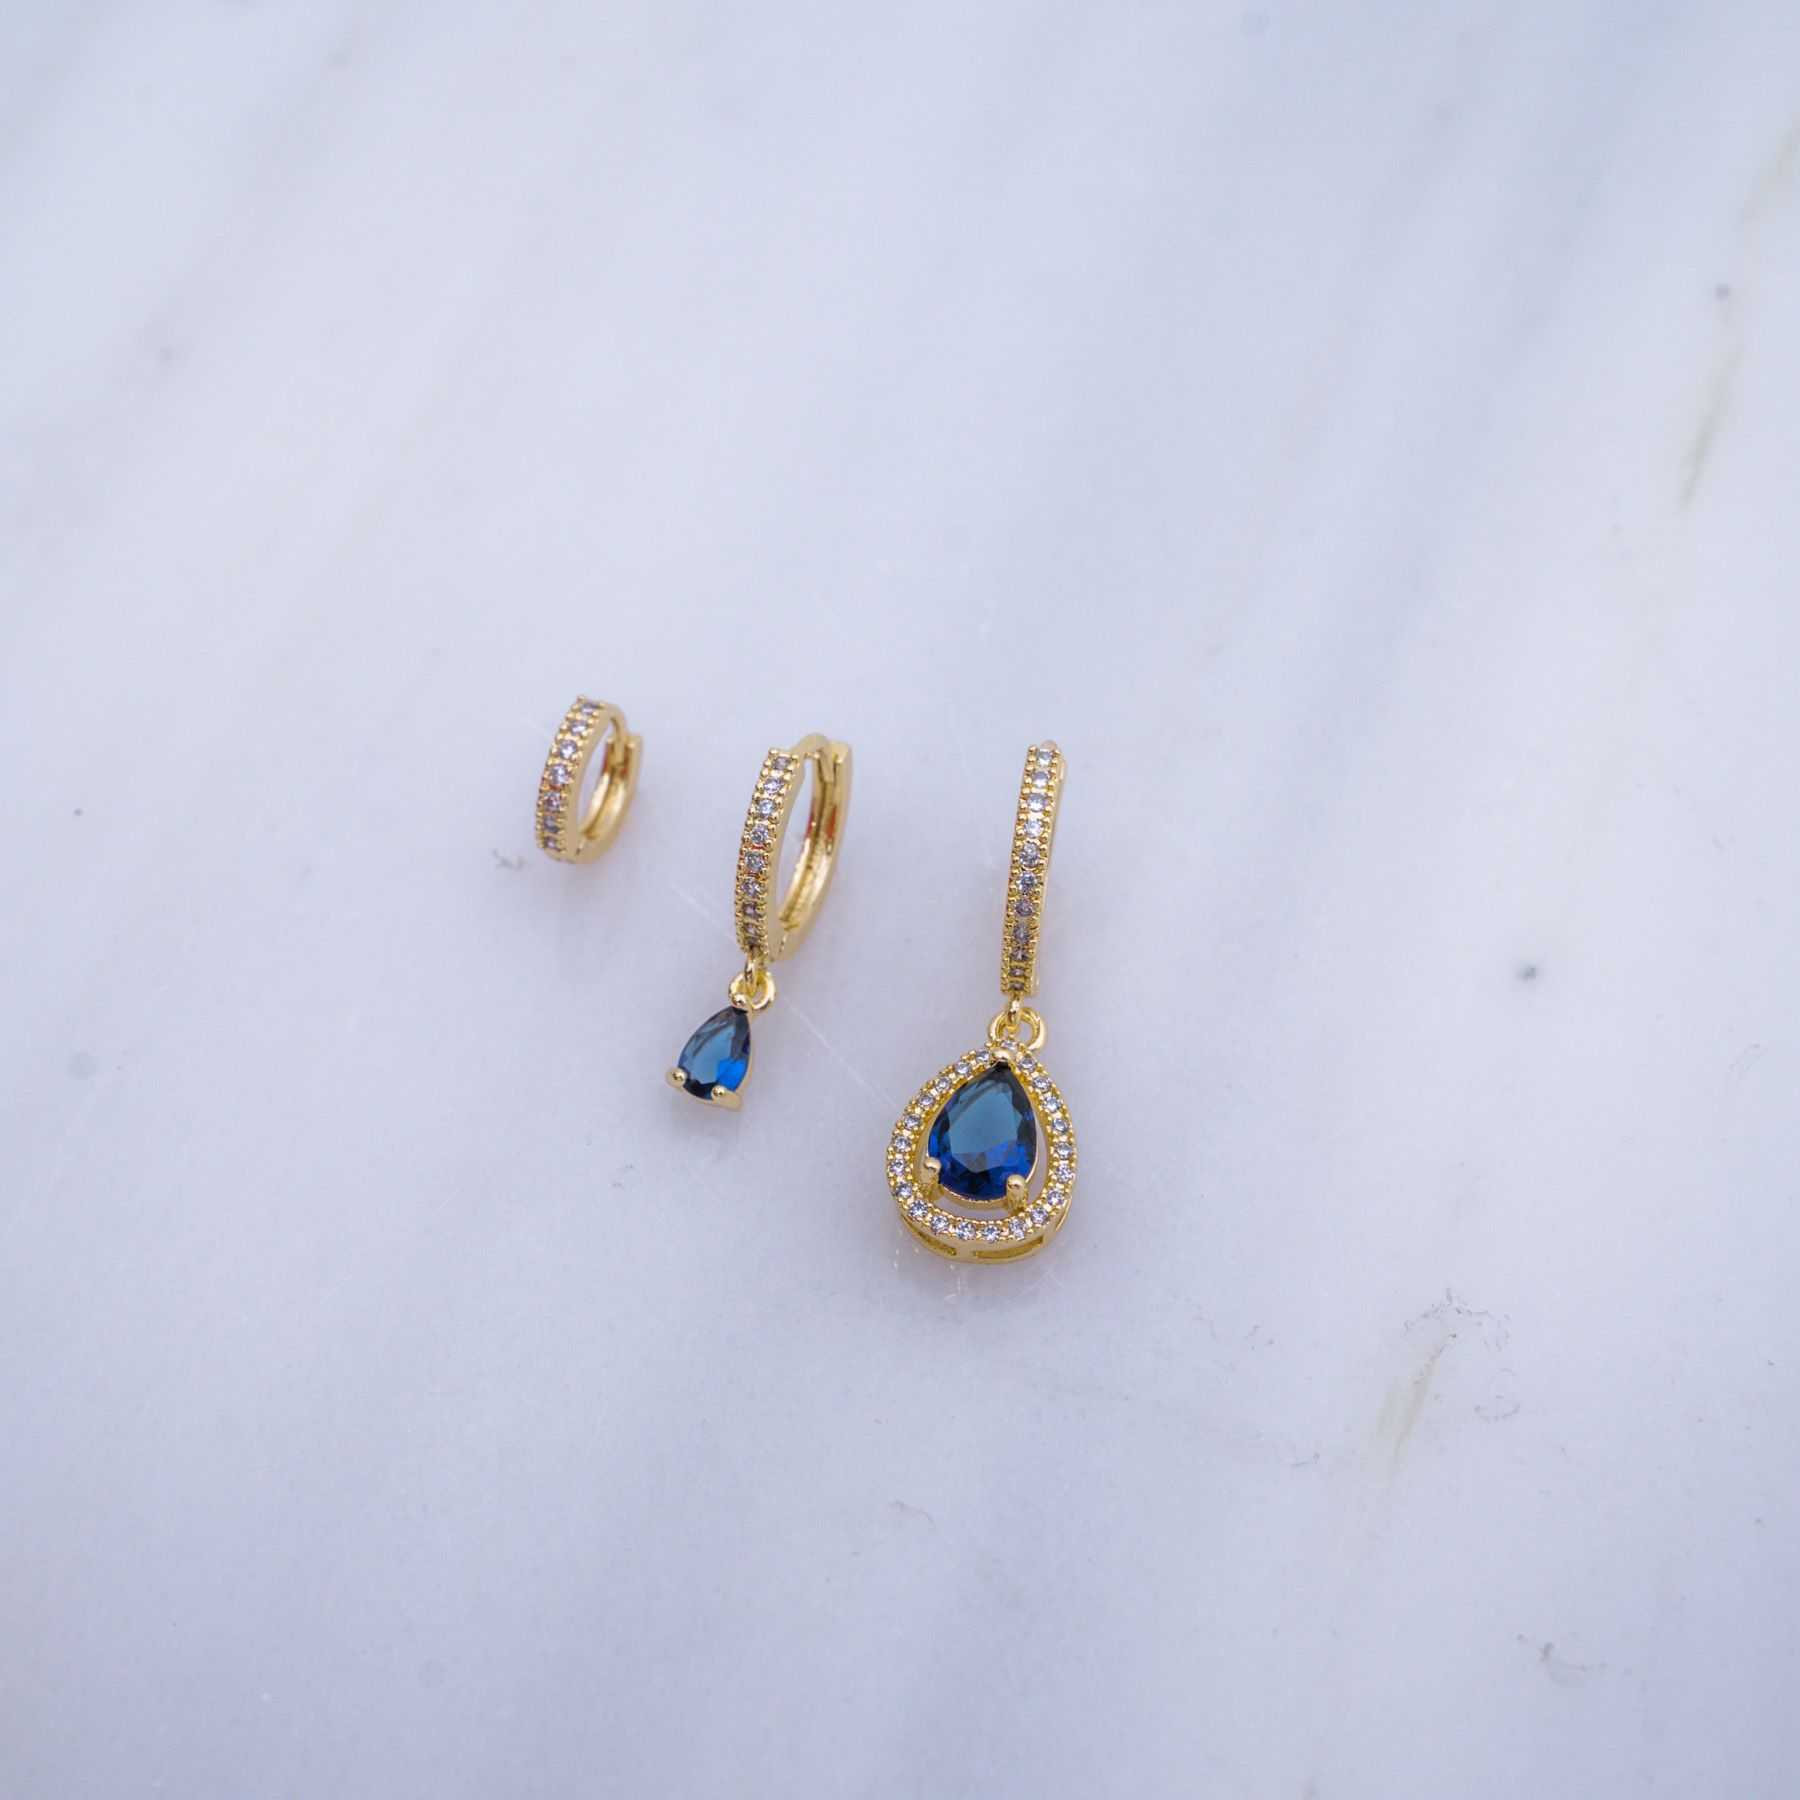 LUCINDA TRIPLE EARRING SET - GOLD & BLUE